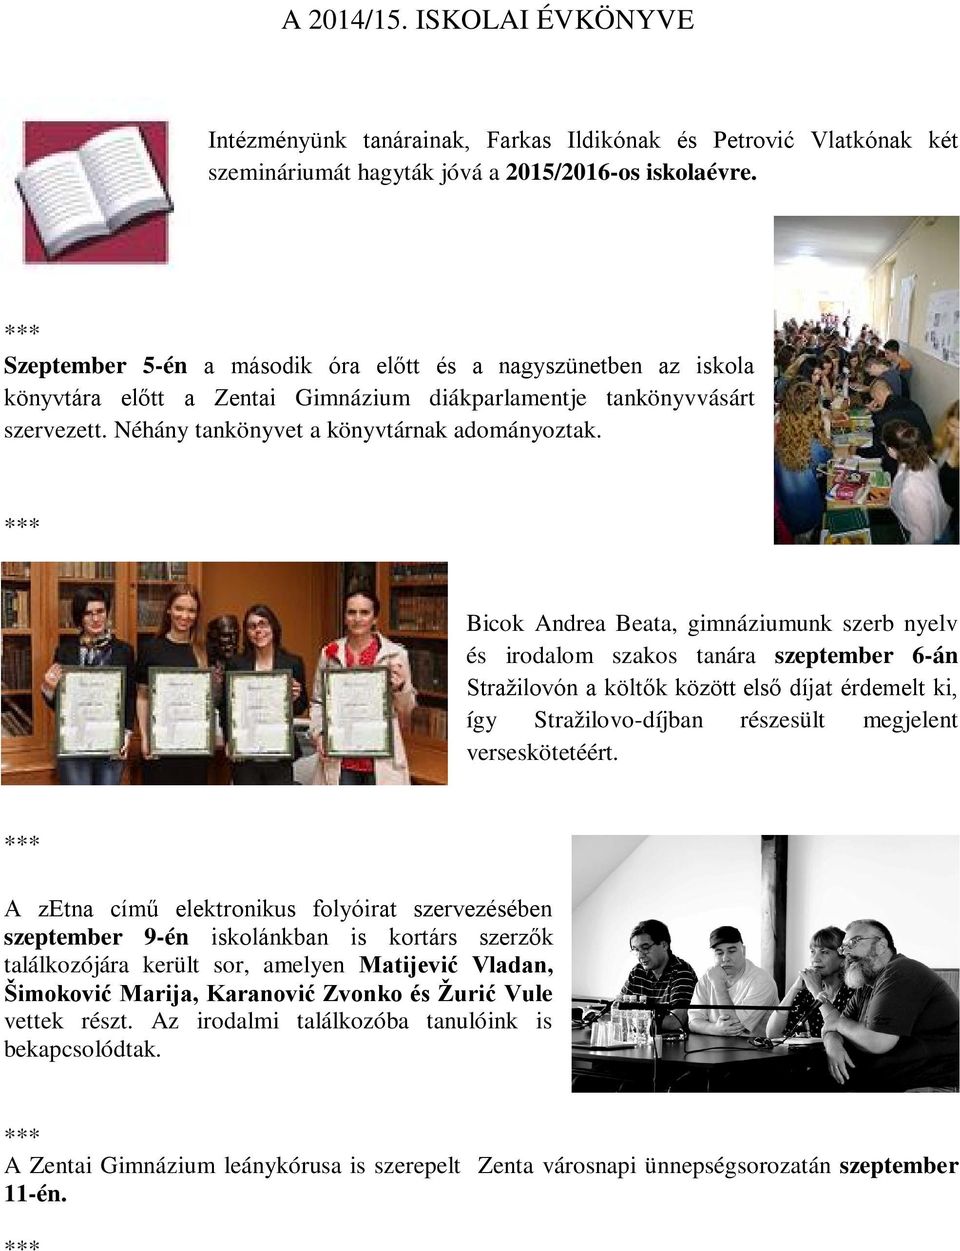 Bicok Andrea Beata, gimnáziumunk szerb nyelv és irodalom szakos tanára szeptember 6-án Stražilovón a költők között első díjat érdemelt ki, így Stražilovo-díjban részesült megjelent verseskötetéért.